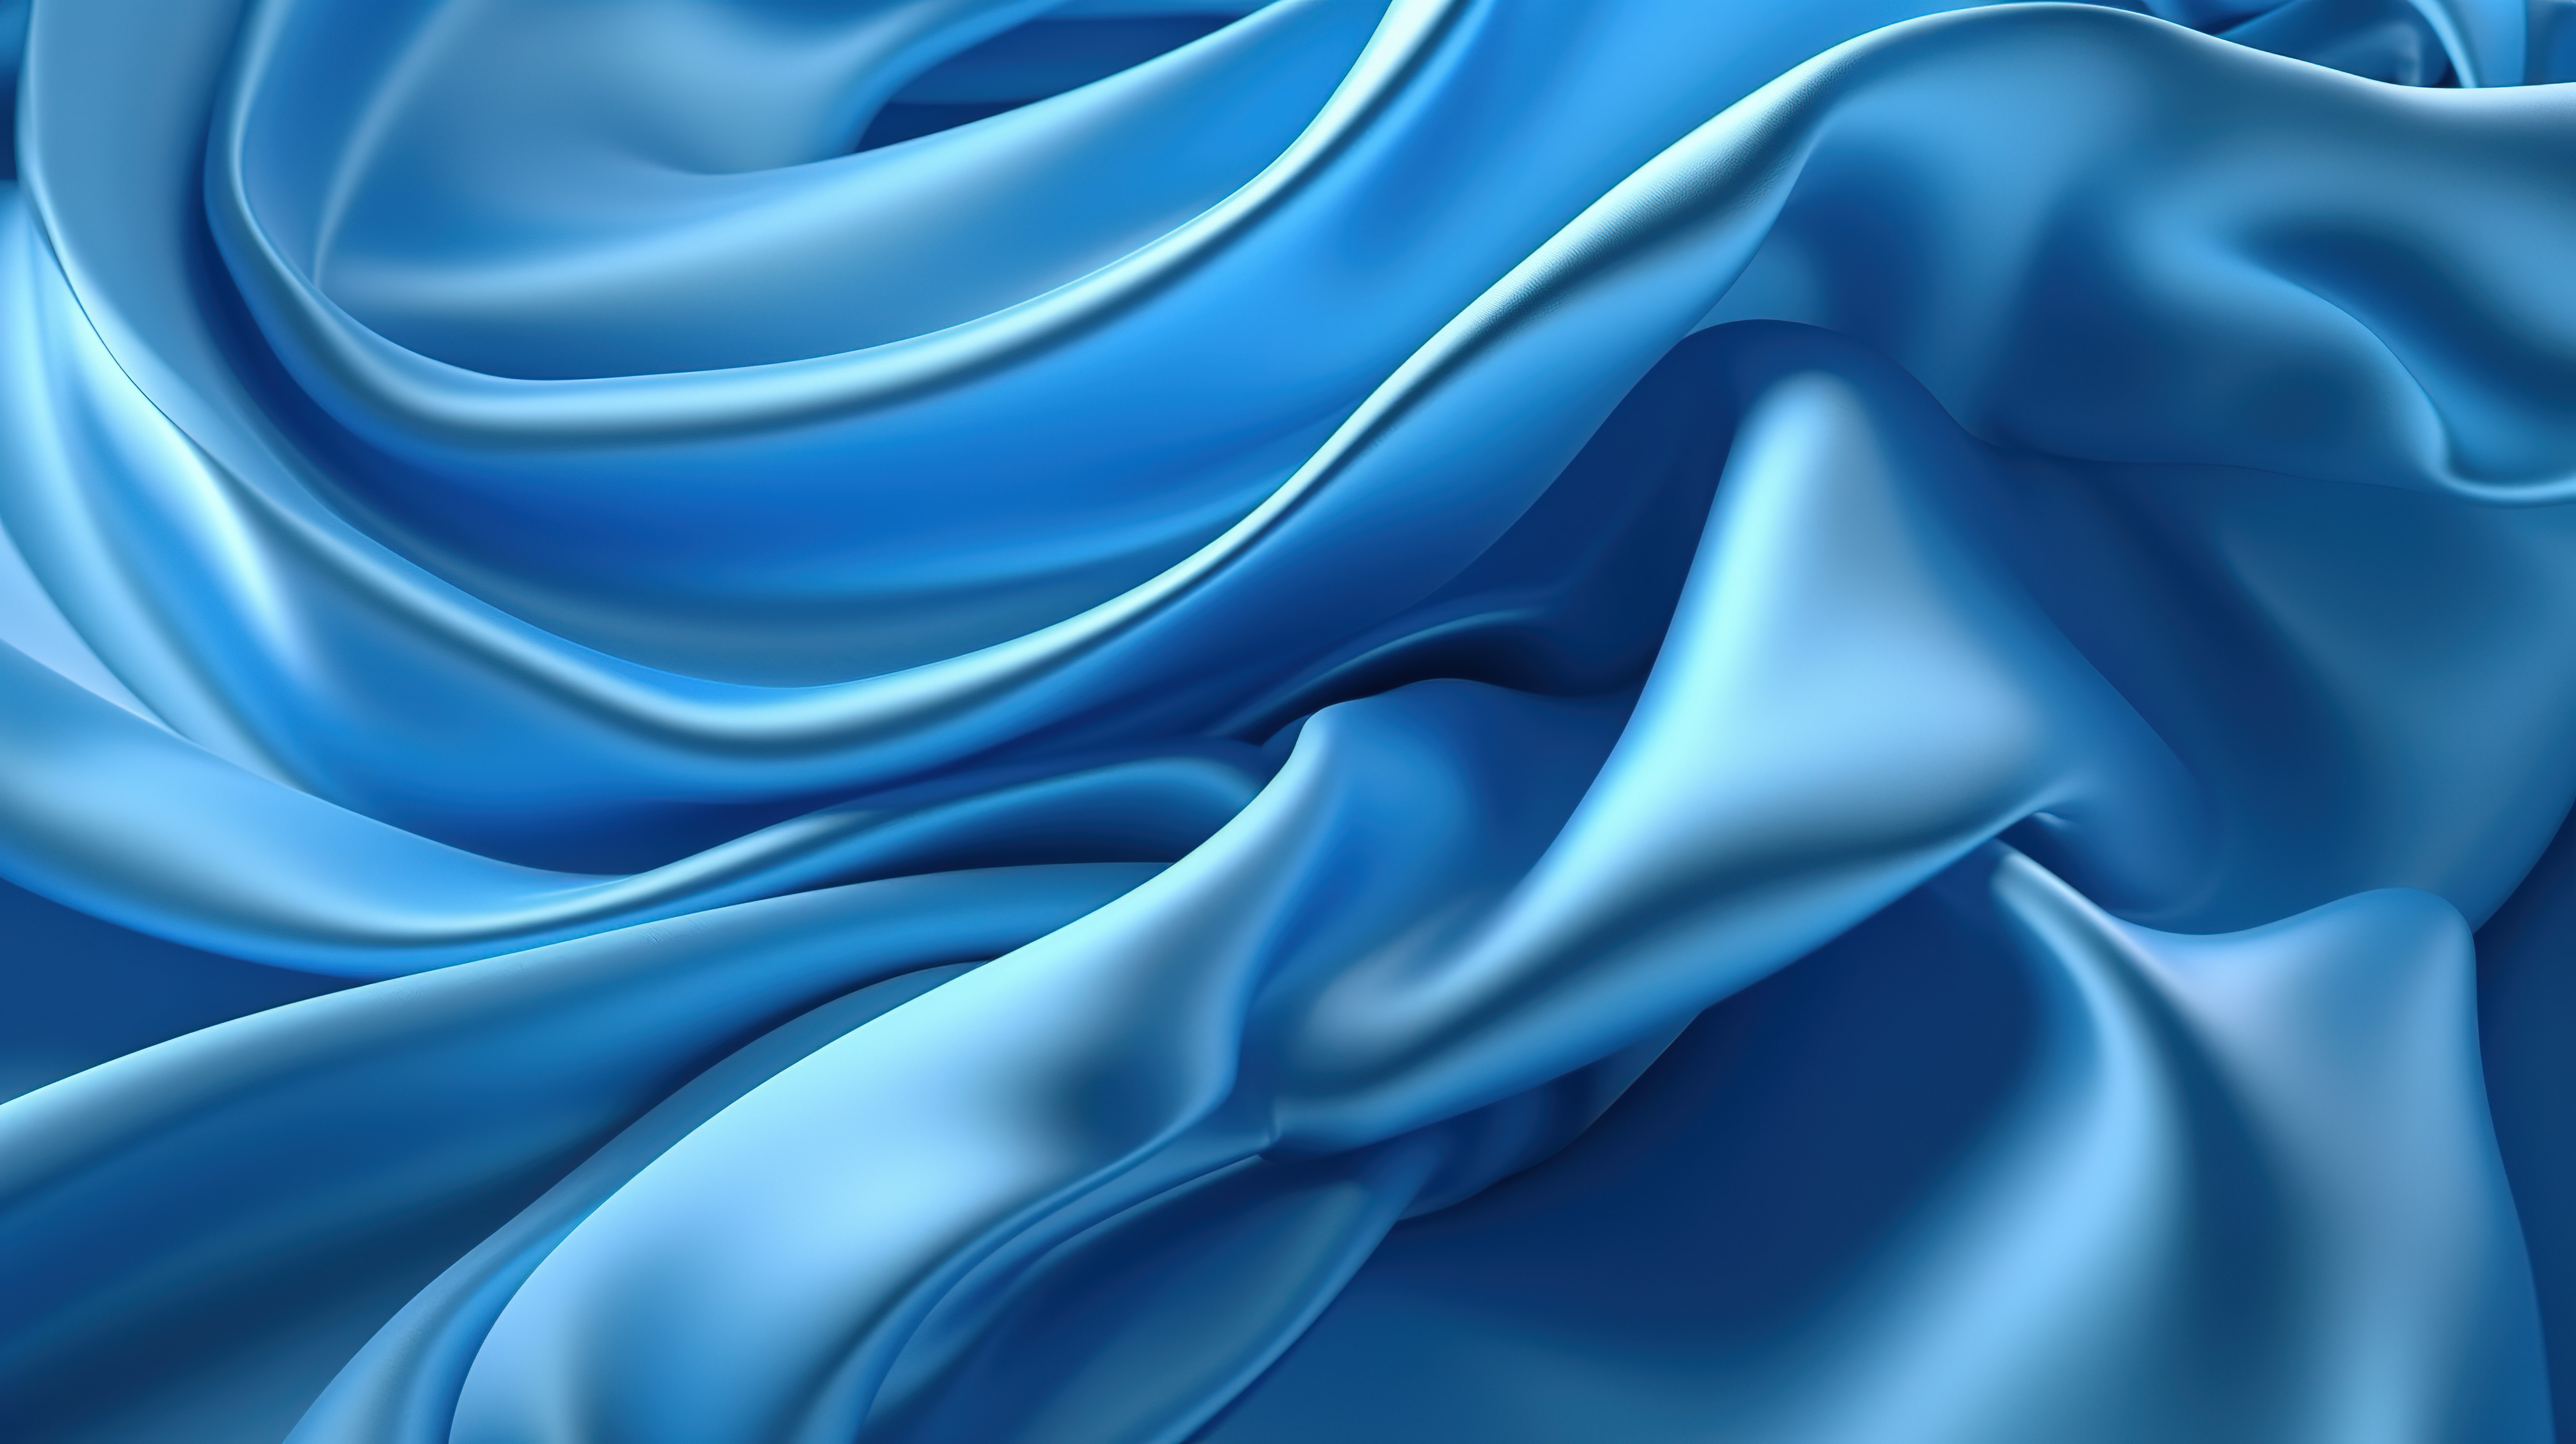 精致的蓝色缎面面料在抽象 3D 背景下以高级时尚风格飞行图片